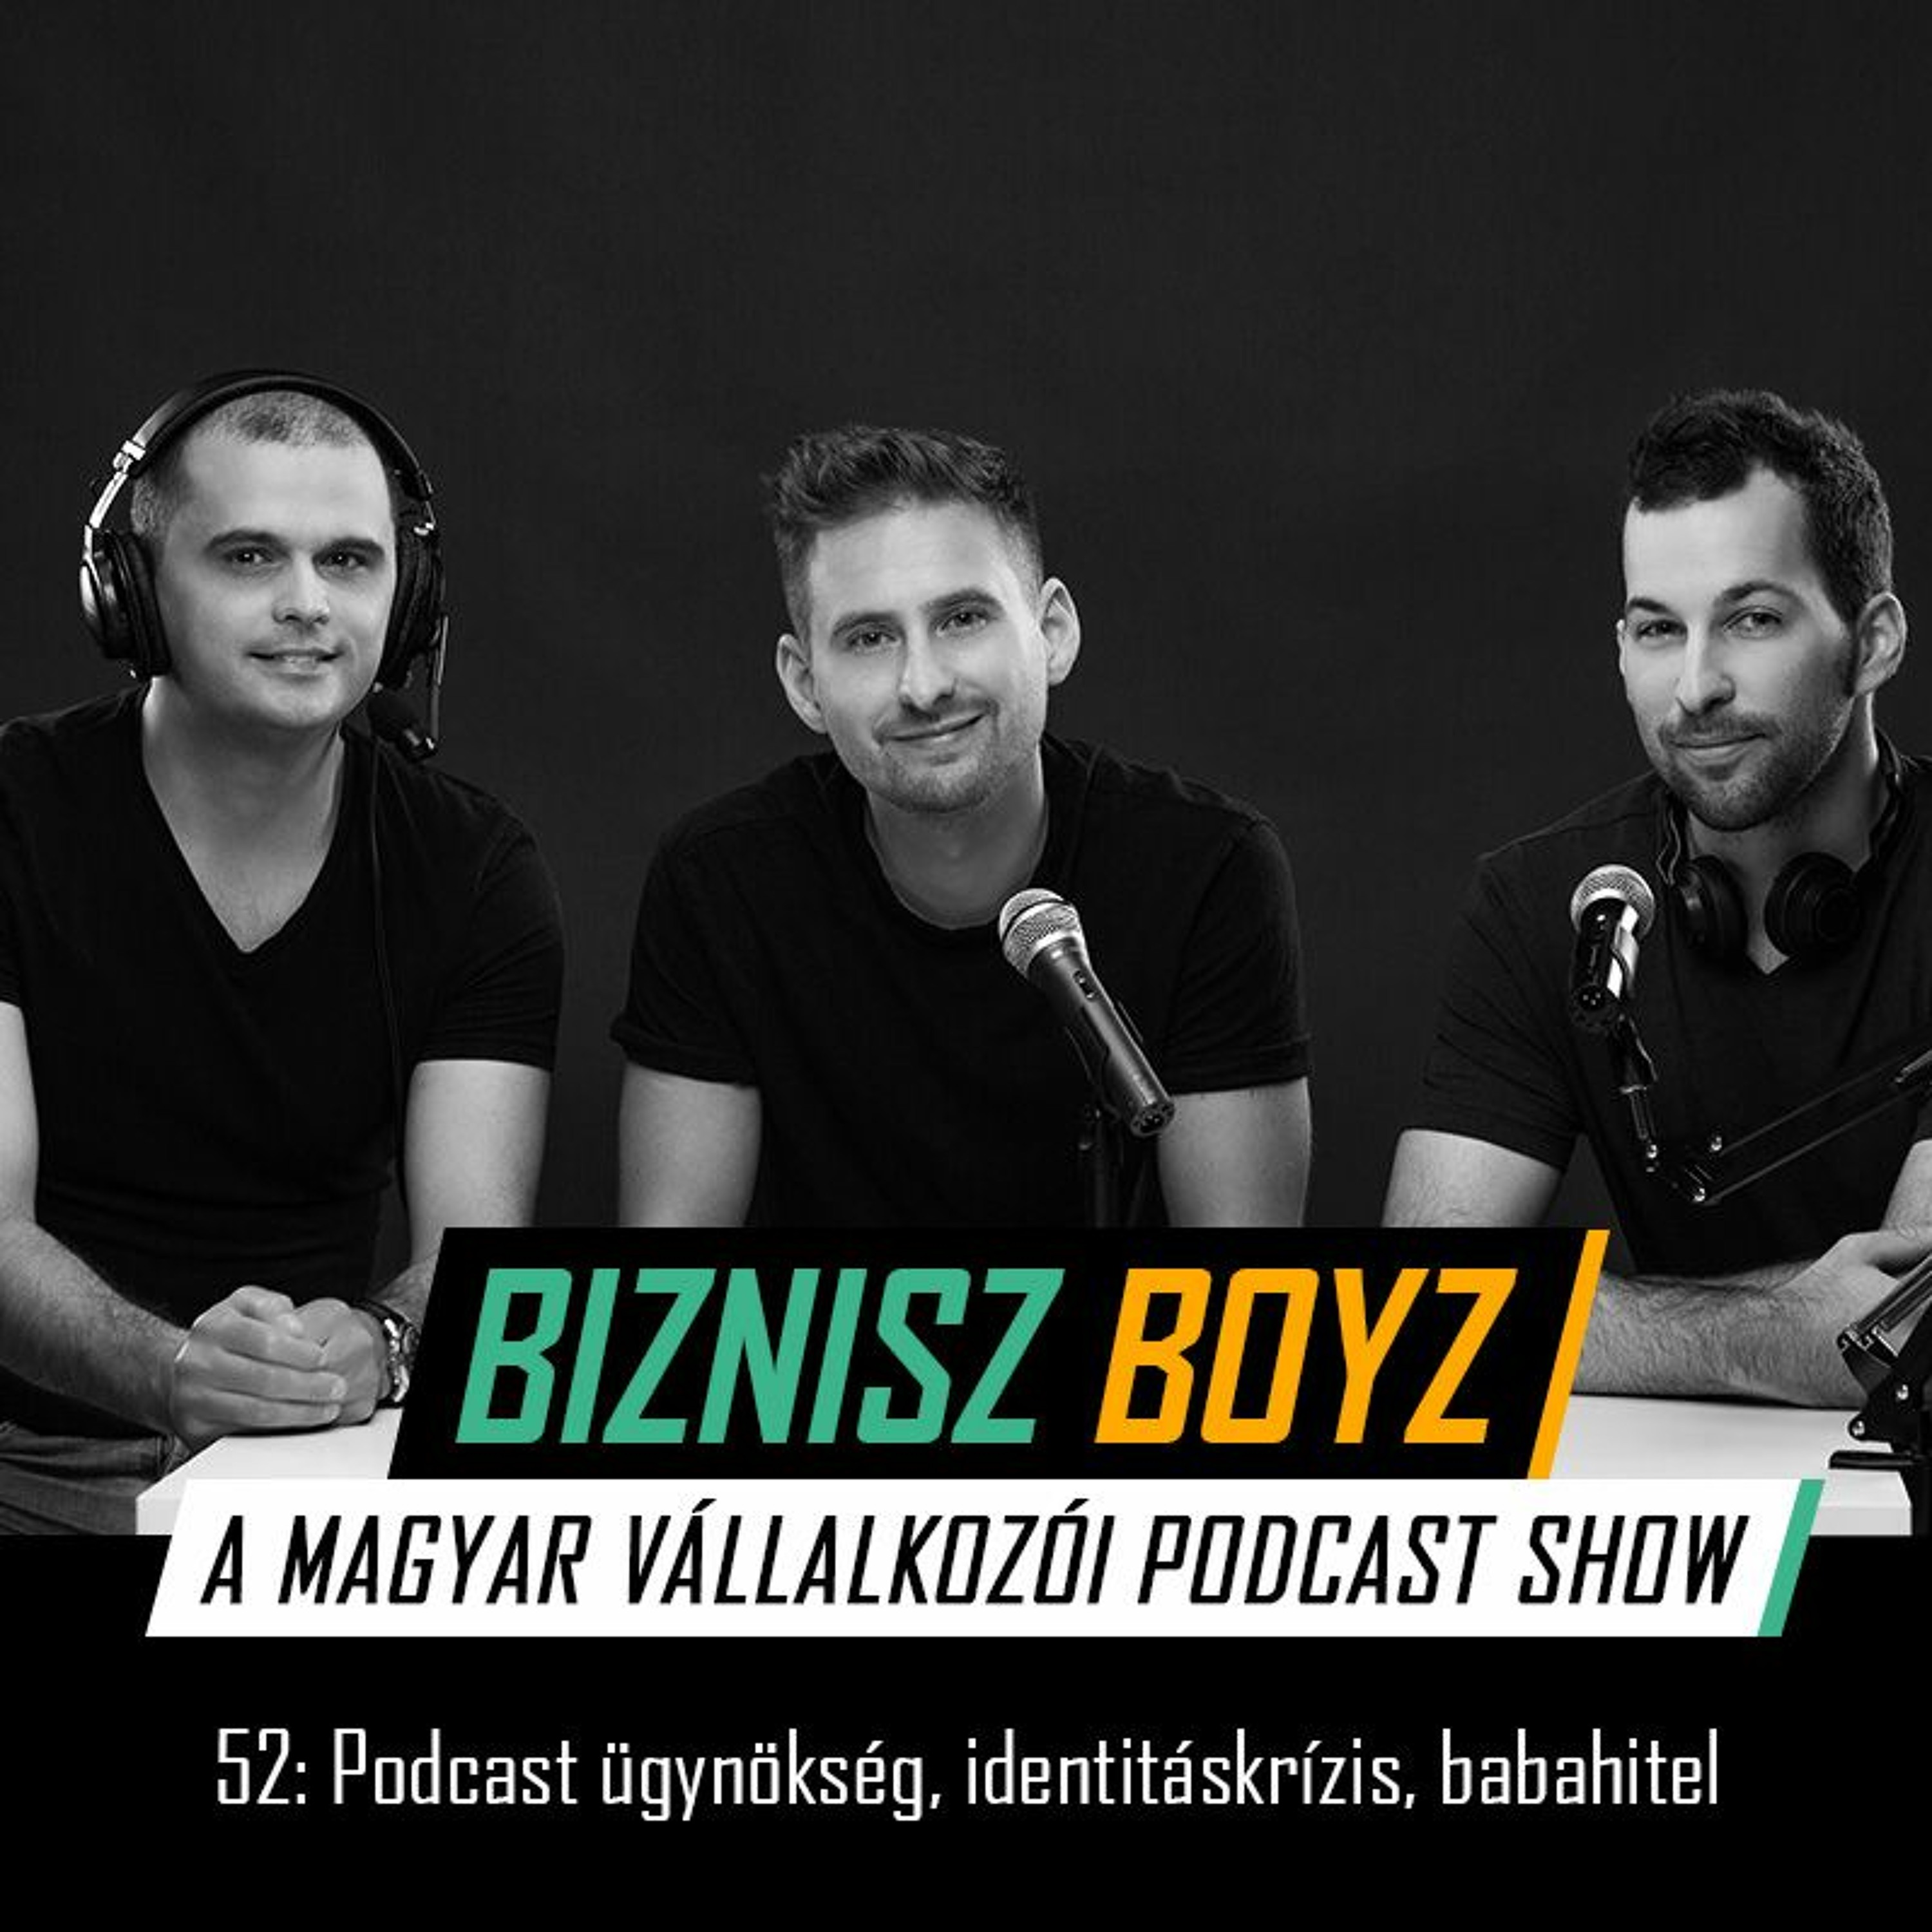 52. Podcast ügynökség, vállalkozói identitáskrízis, babahitel | Biznisz Boyz Podcast